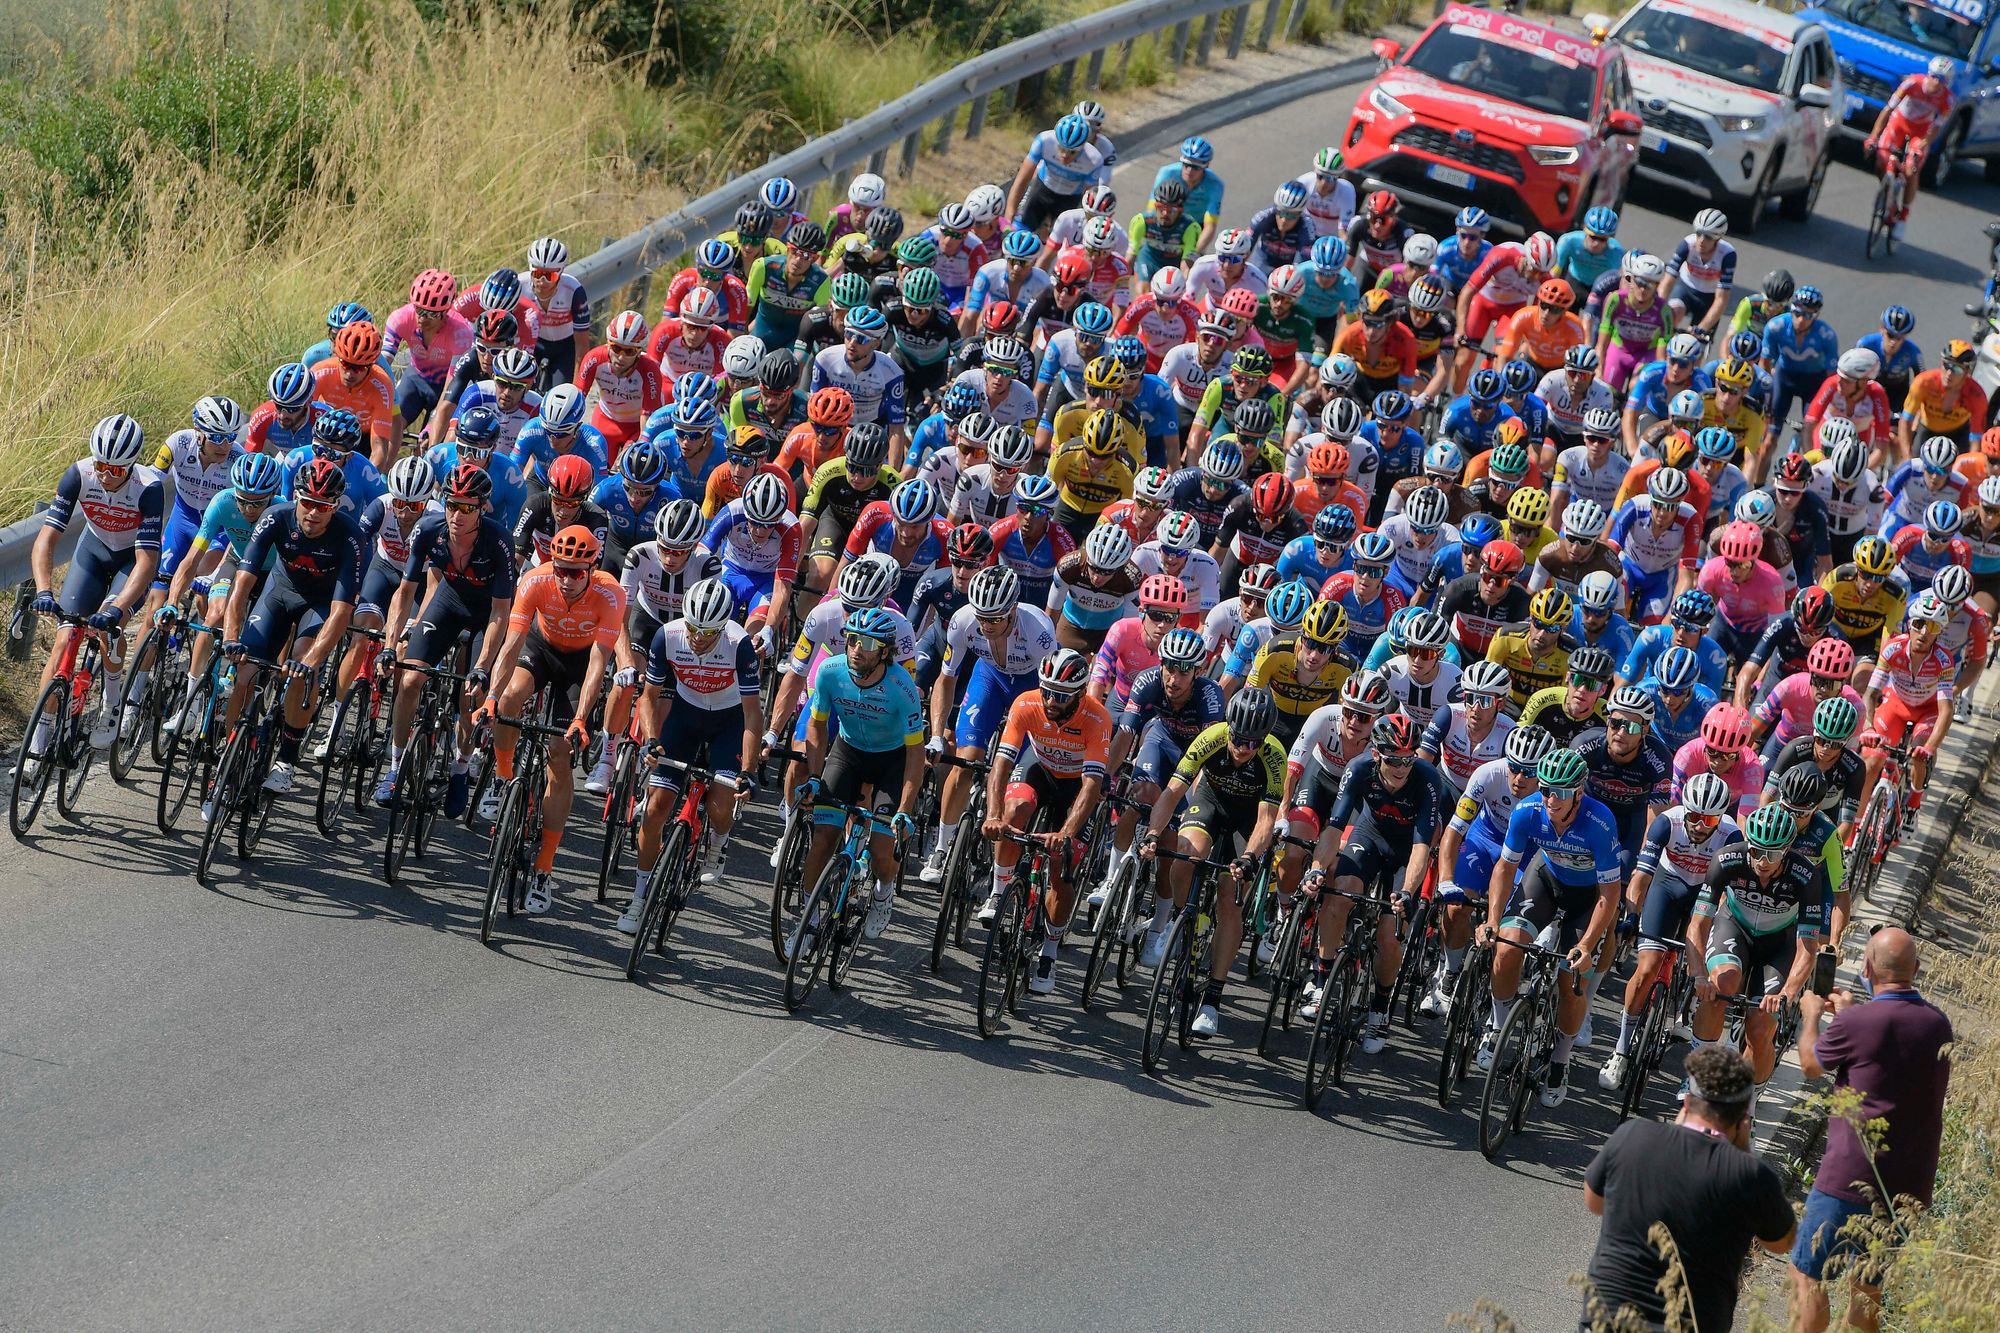 Bejelentette keretét a Jumbo-Visma a Tour de France-ra; a magyar kerékpáros nem került bele